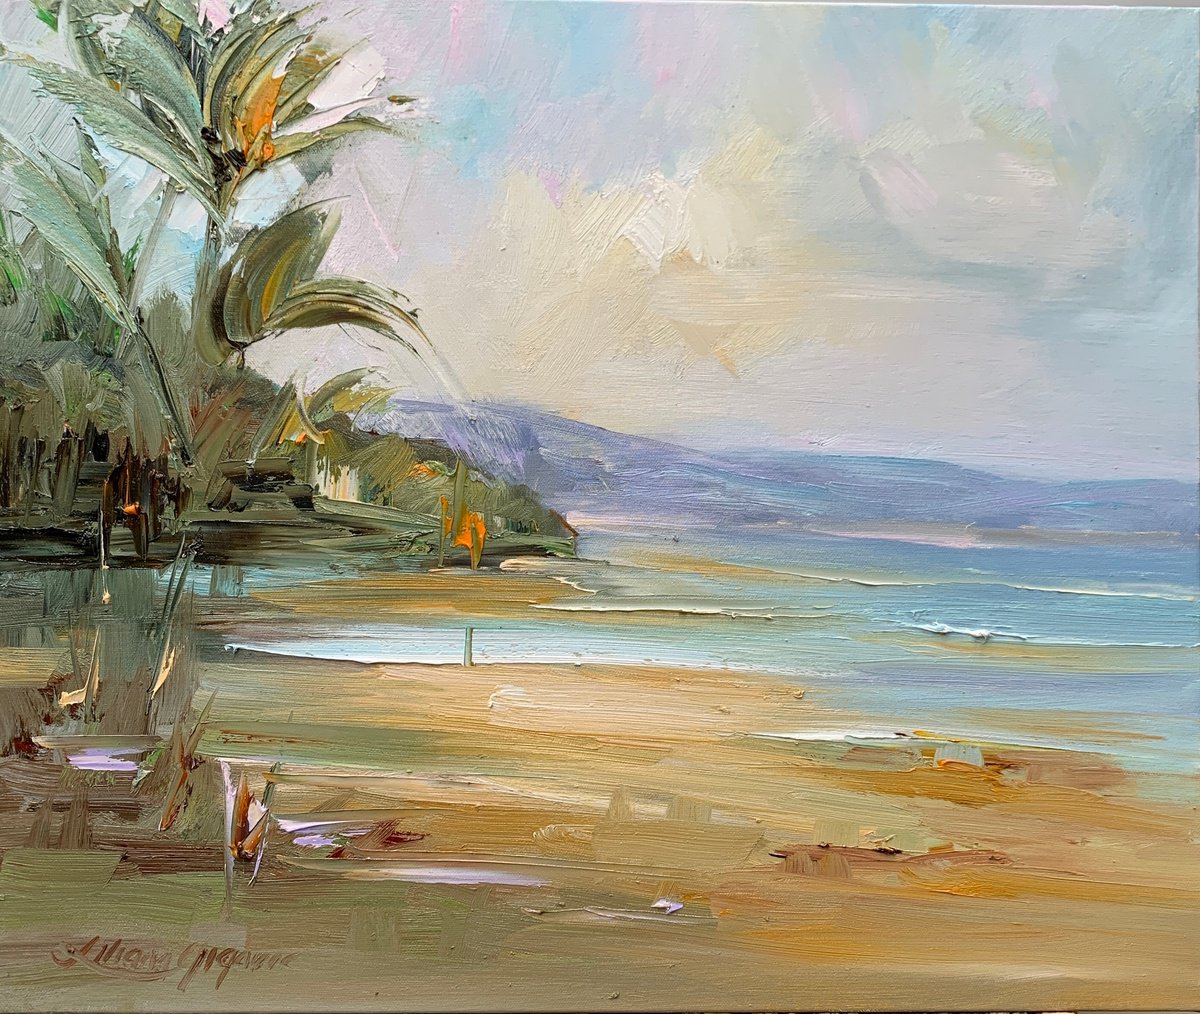 Palm Bay beach No 4 by Liliana Gigovic